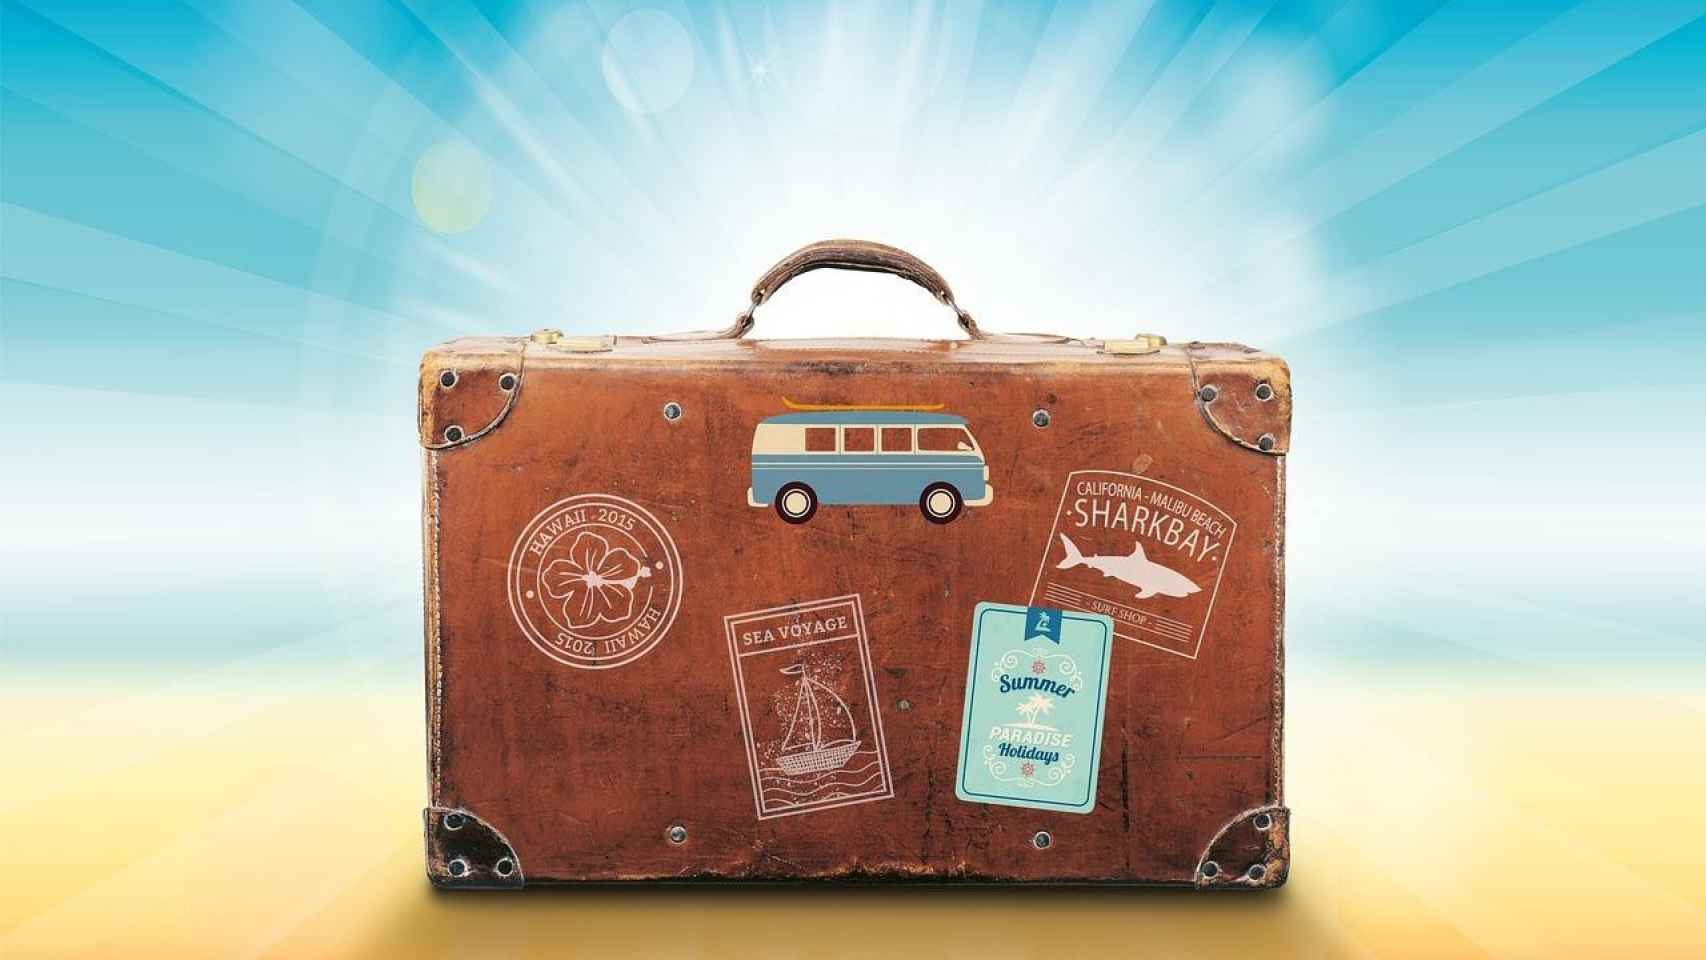 maleta, accesorio necesario al viajar